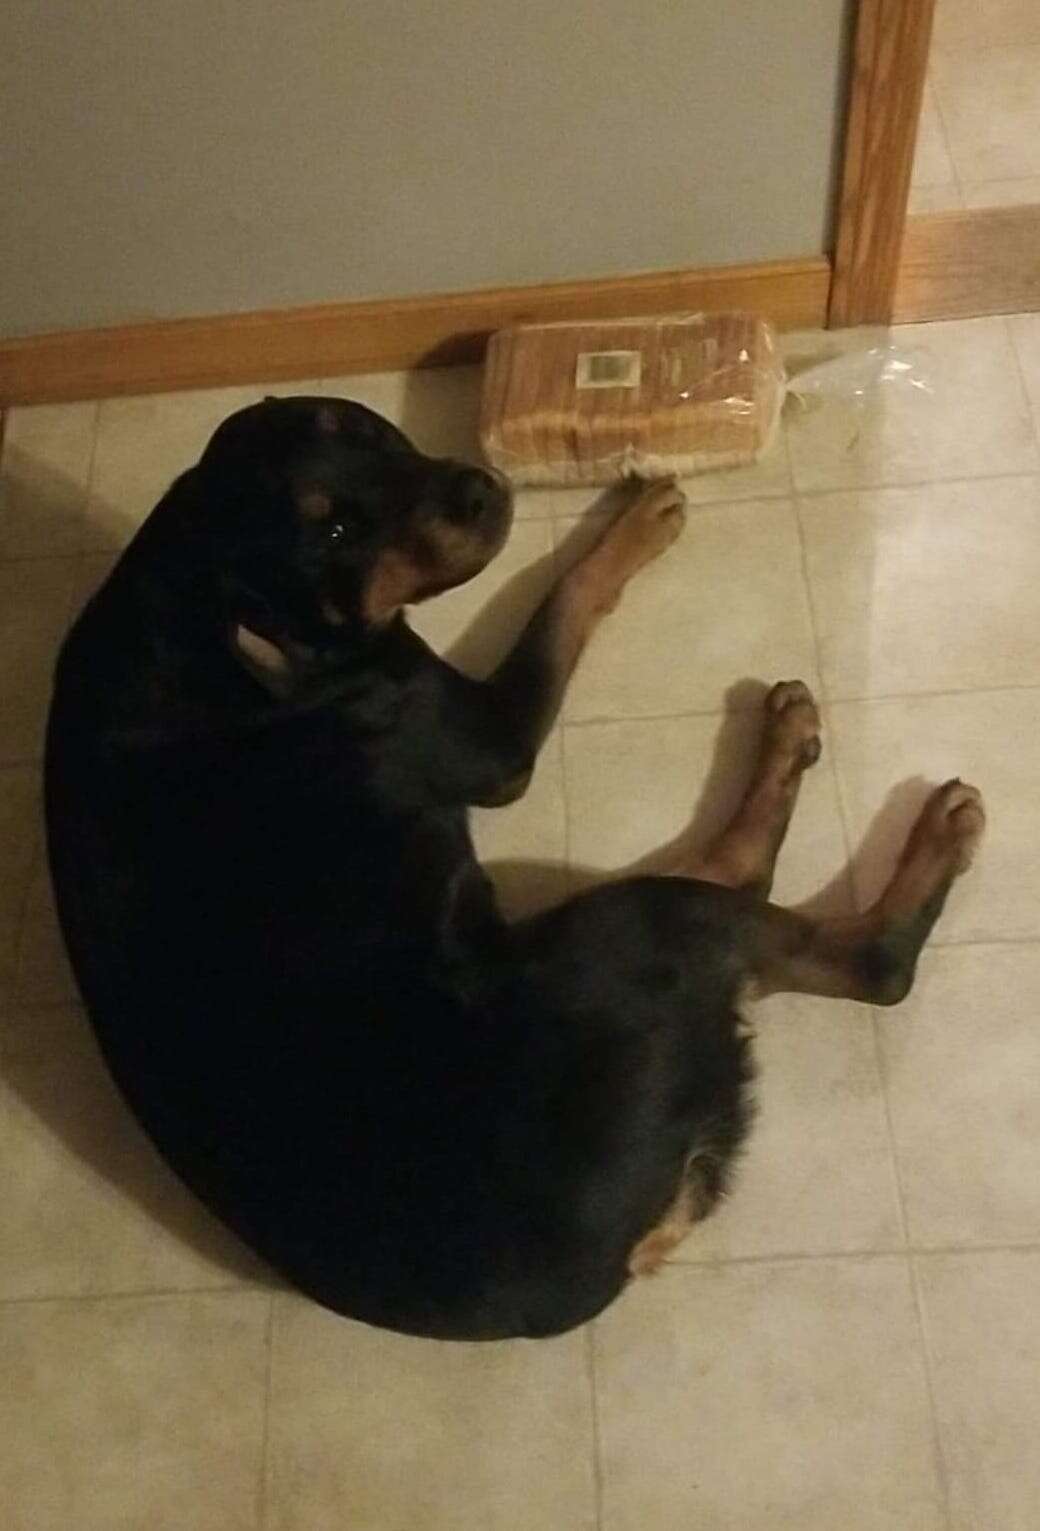 Dog guards bread